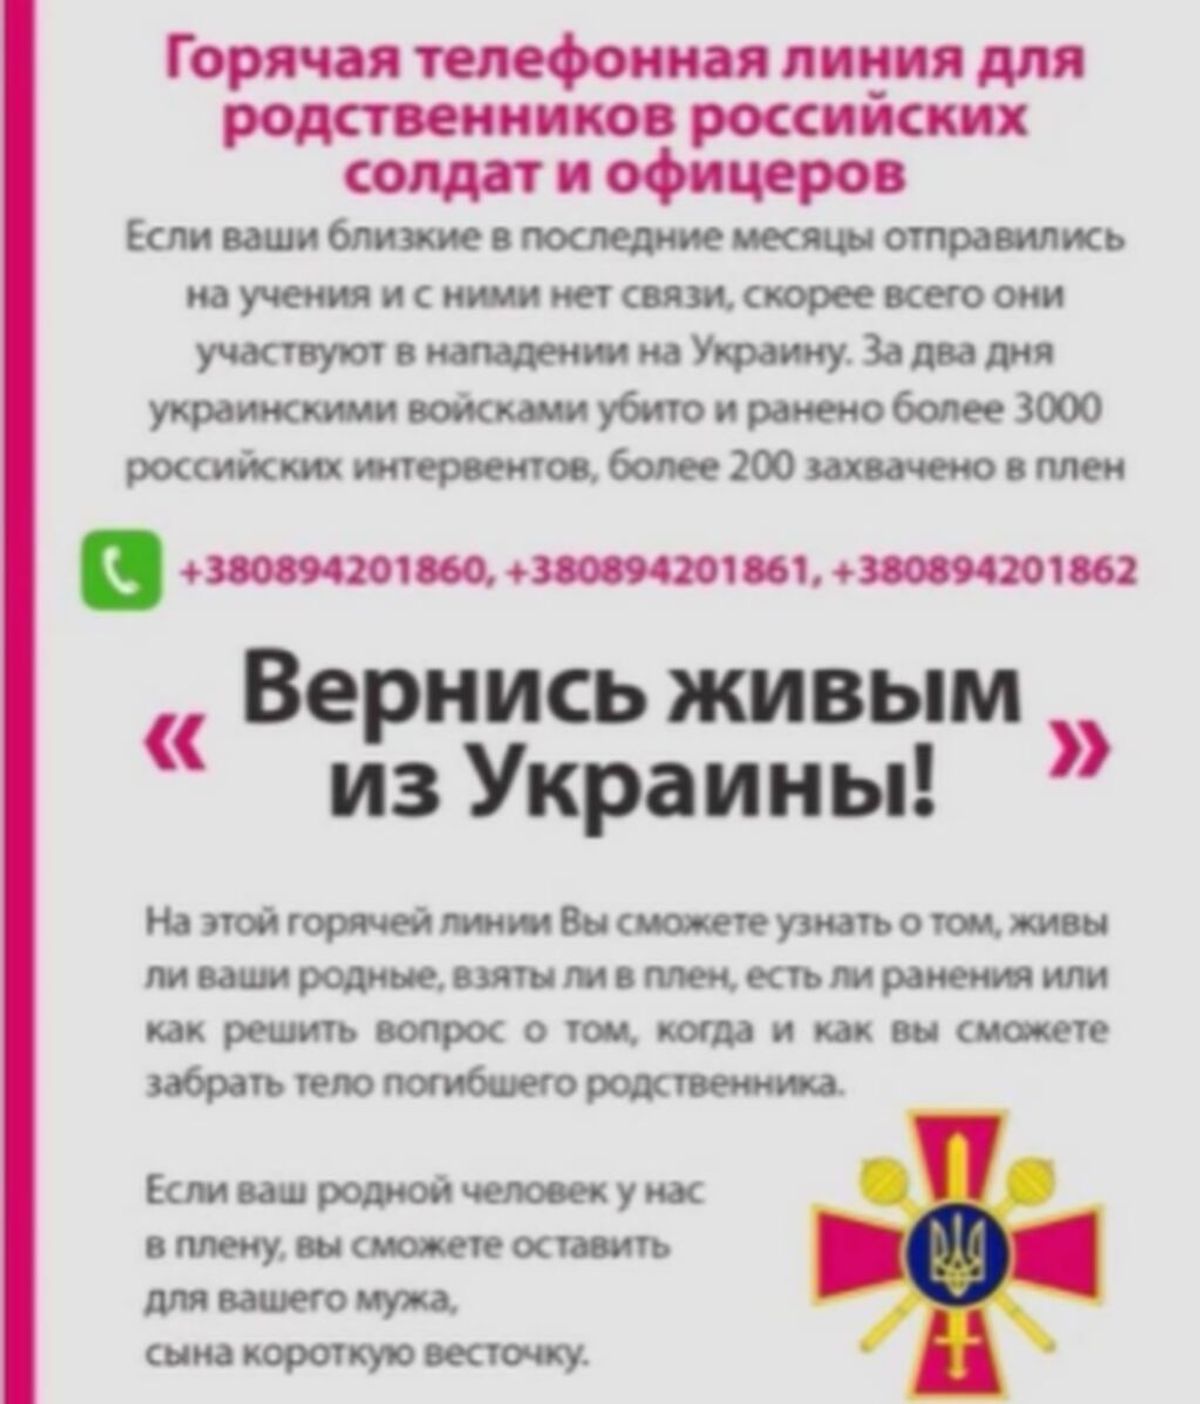 Ucrania crea una línea de teléfono para que familiares de militares rusos puedan saber si están muertos, heridos o capturados